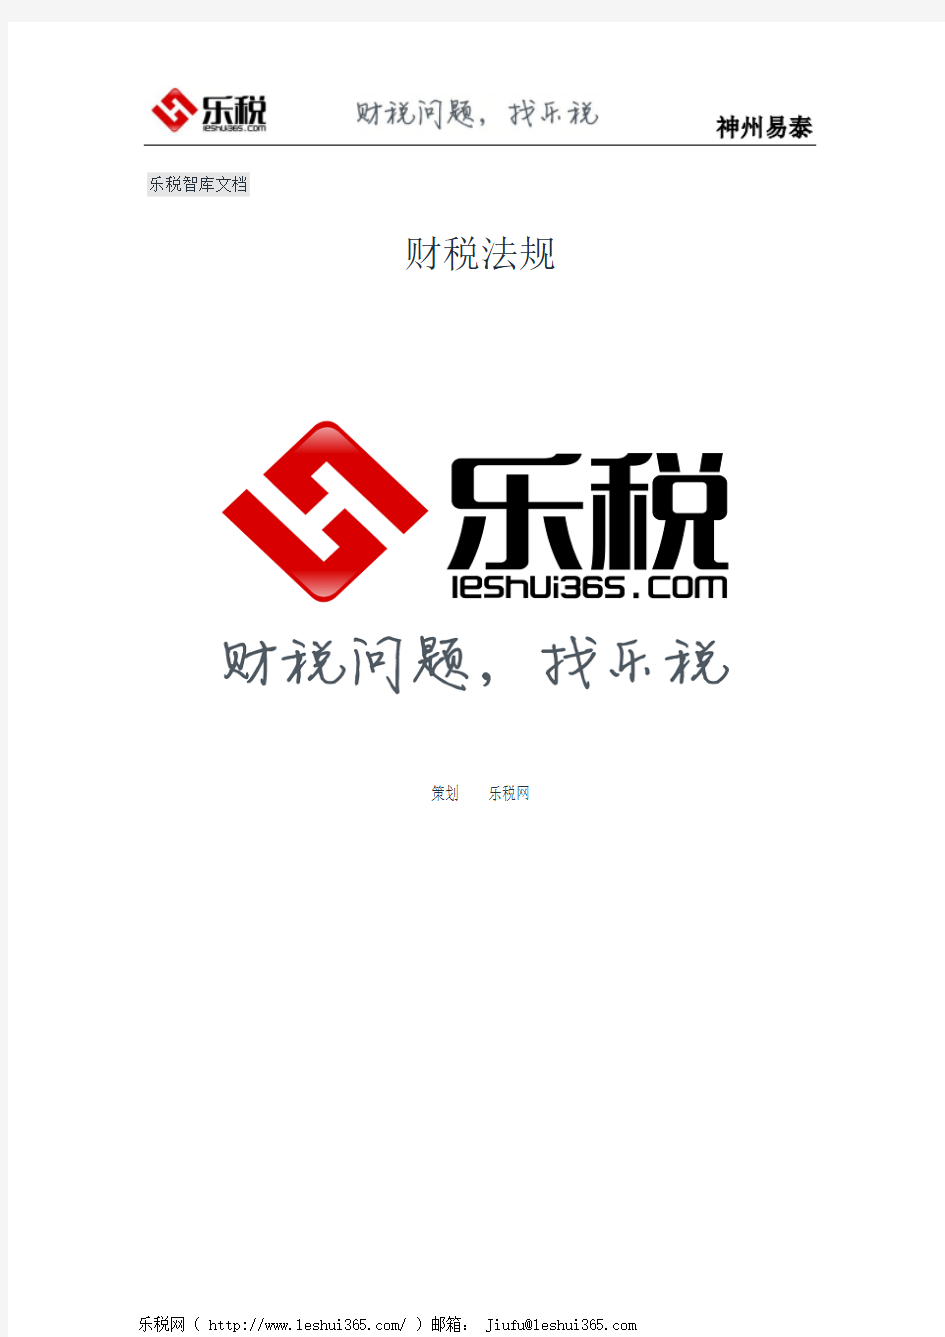 深圳市地方税务局关于黄吉林等职务任免的通知